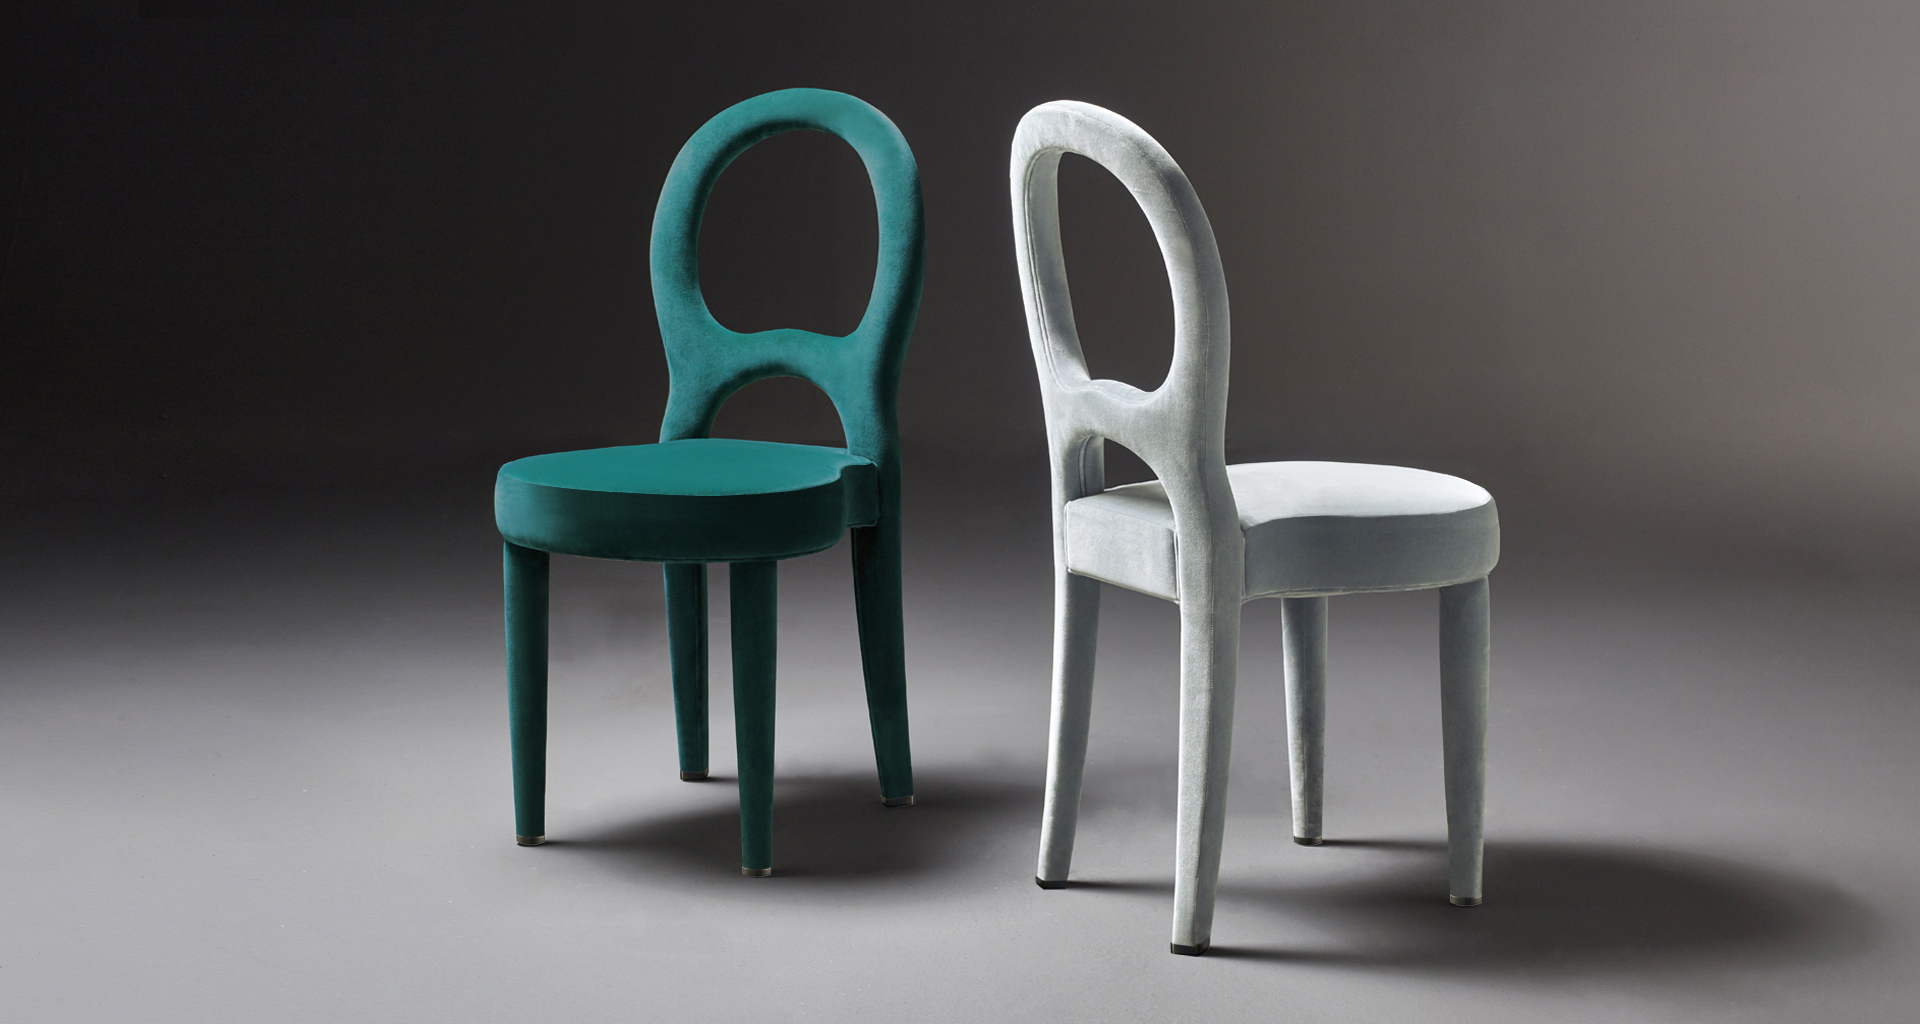 Bilou Bilou è una sedia da pranzo rivestita in velluto e lino o pelle nappa disponibile in diversi colori e nelle versioni standard, large e kids. Bilou Bilou è la più iconica delle sedie da pranzo del catalogo di Promemoria | Promemoria